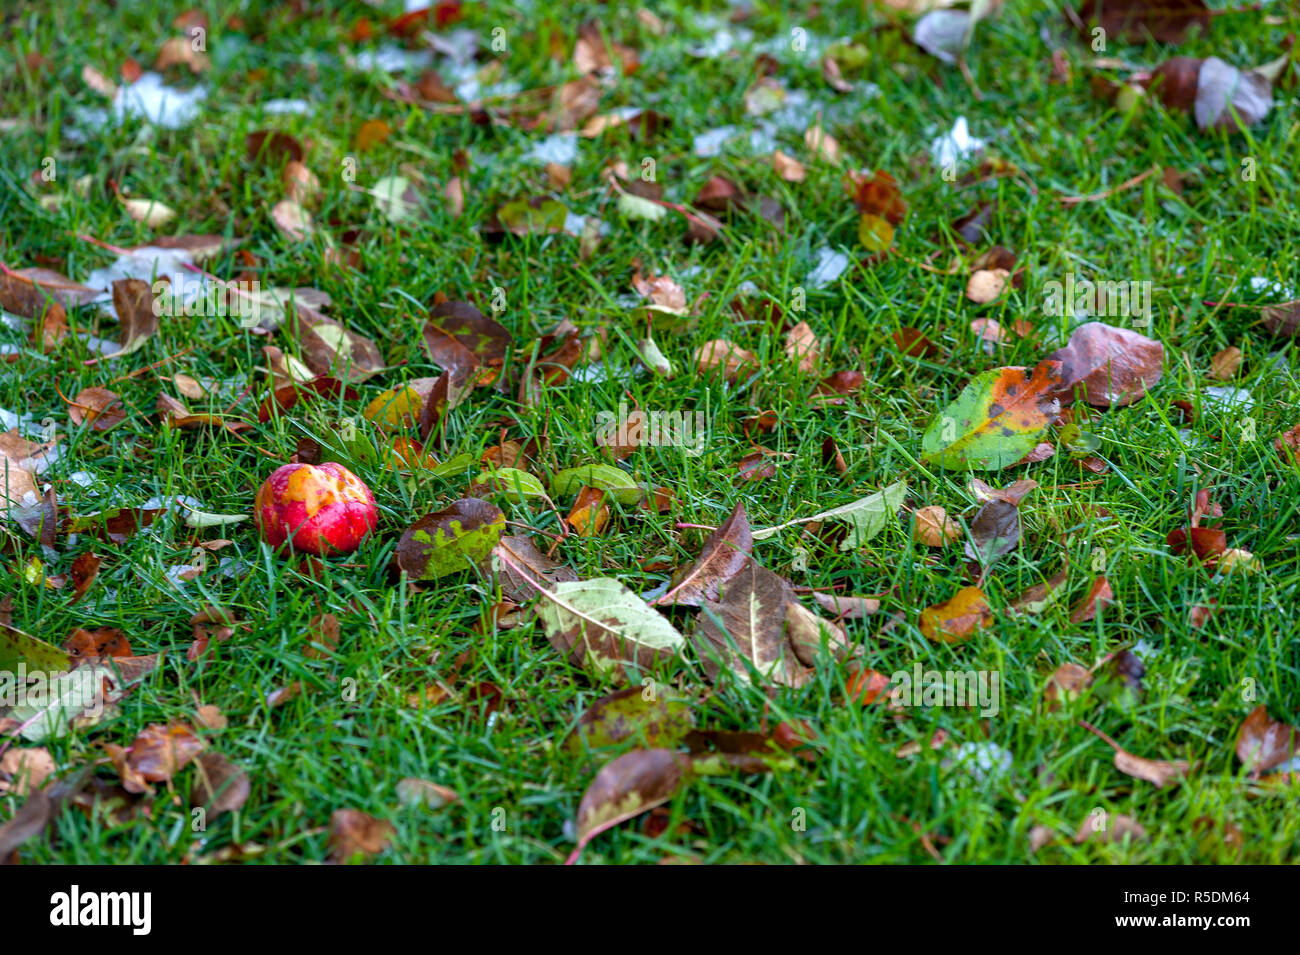 Mezza mangiata apple e foglie di erba Foto Stock